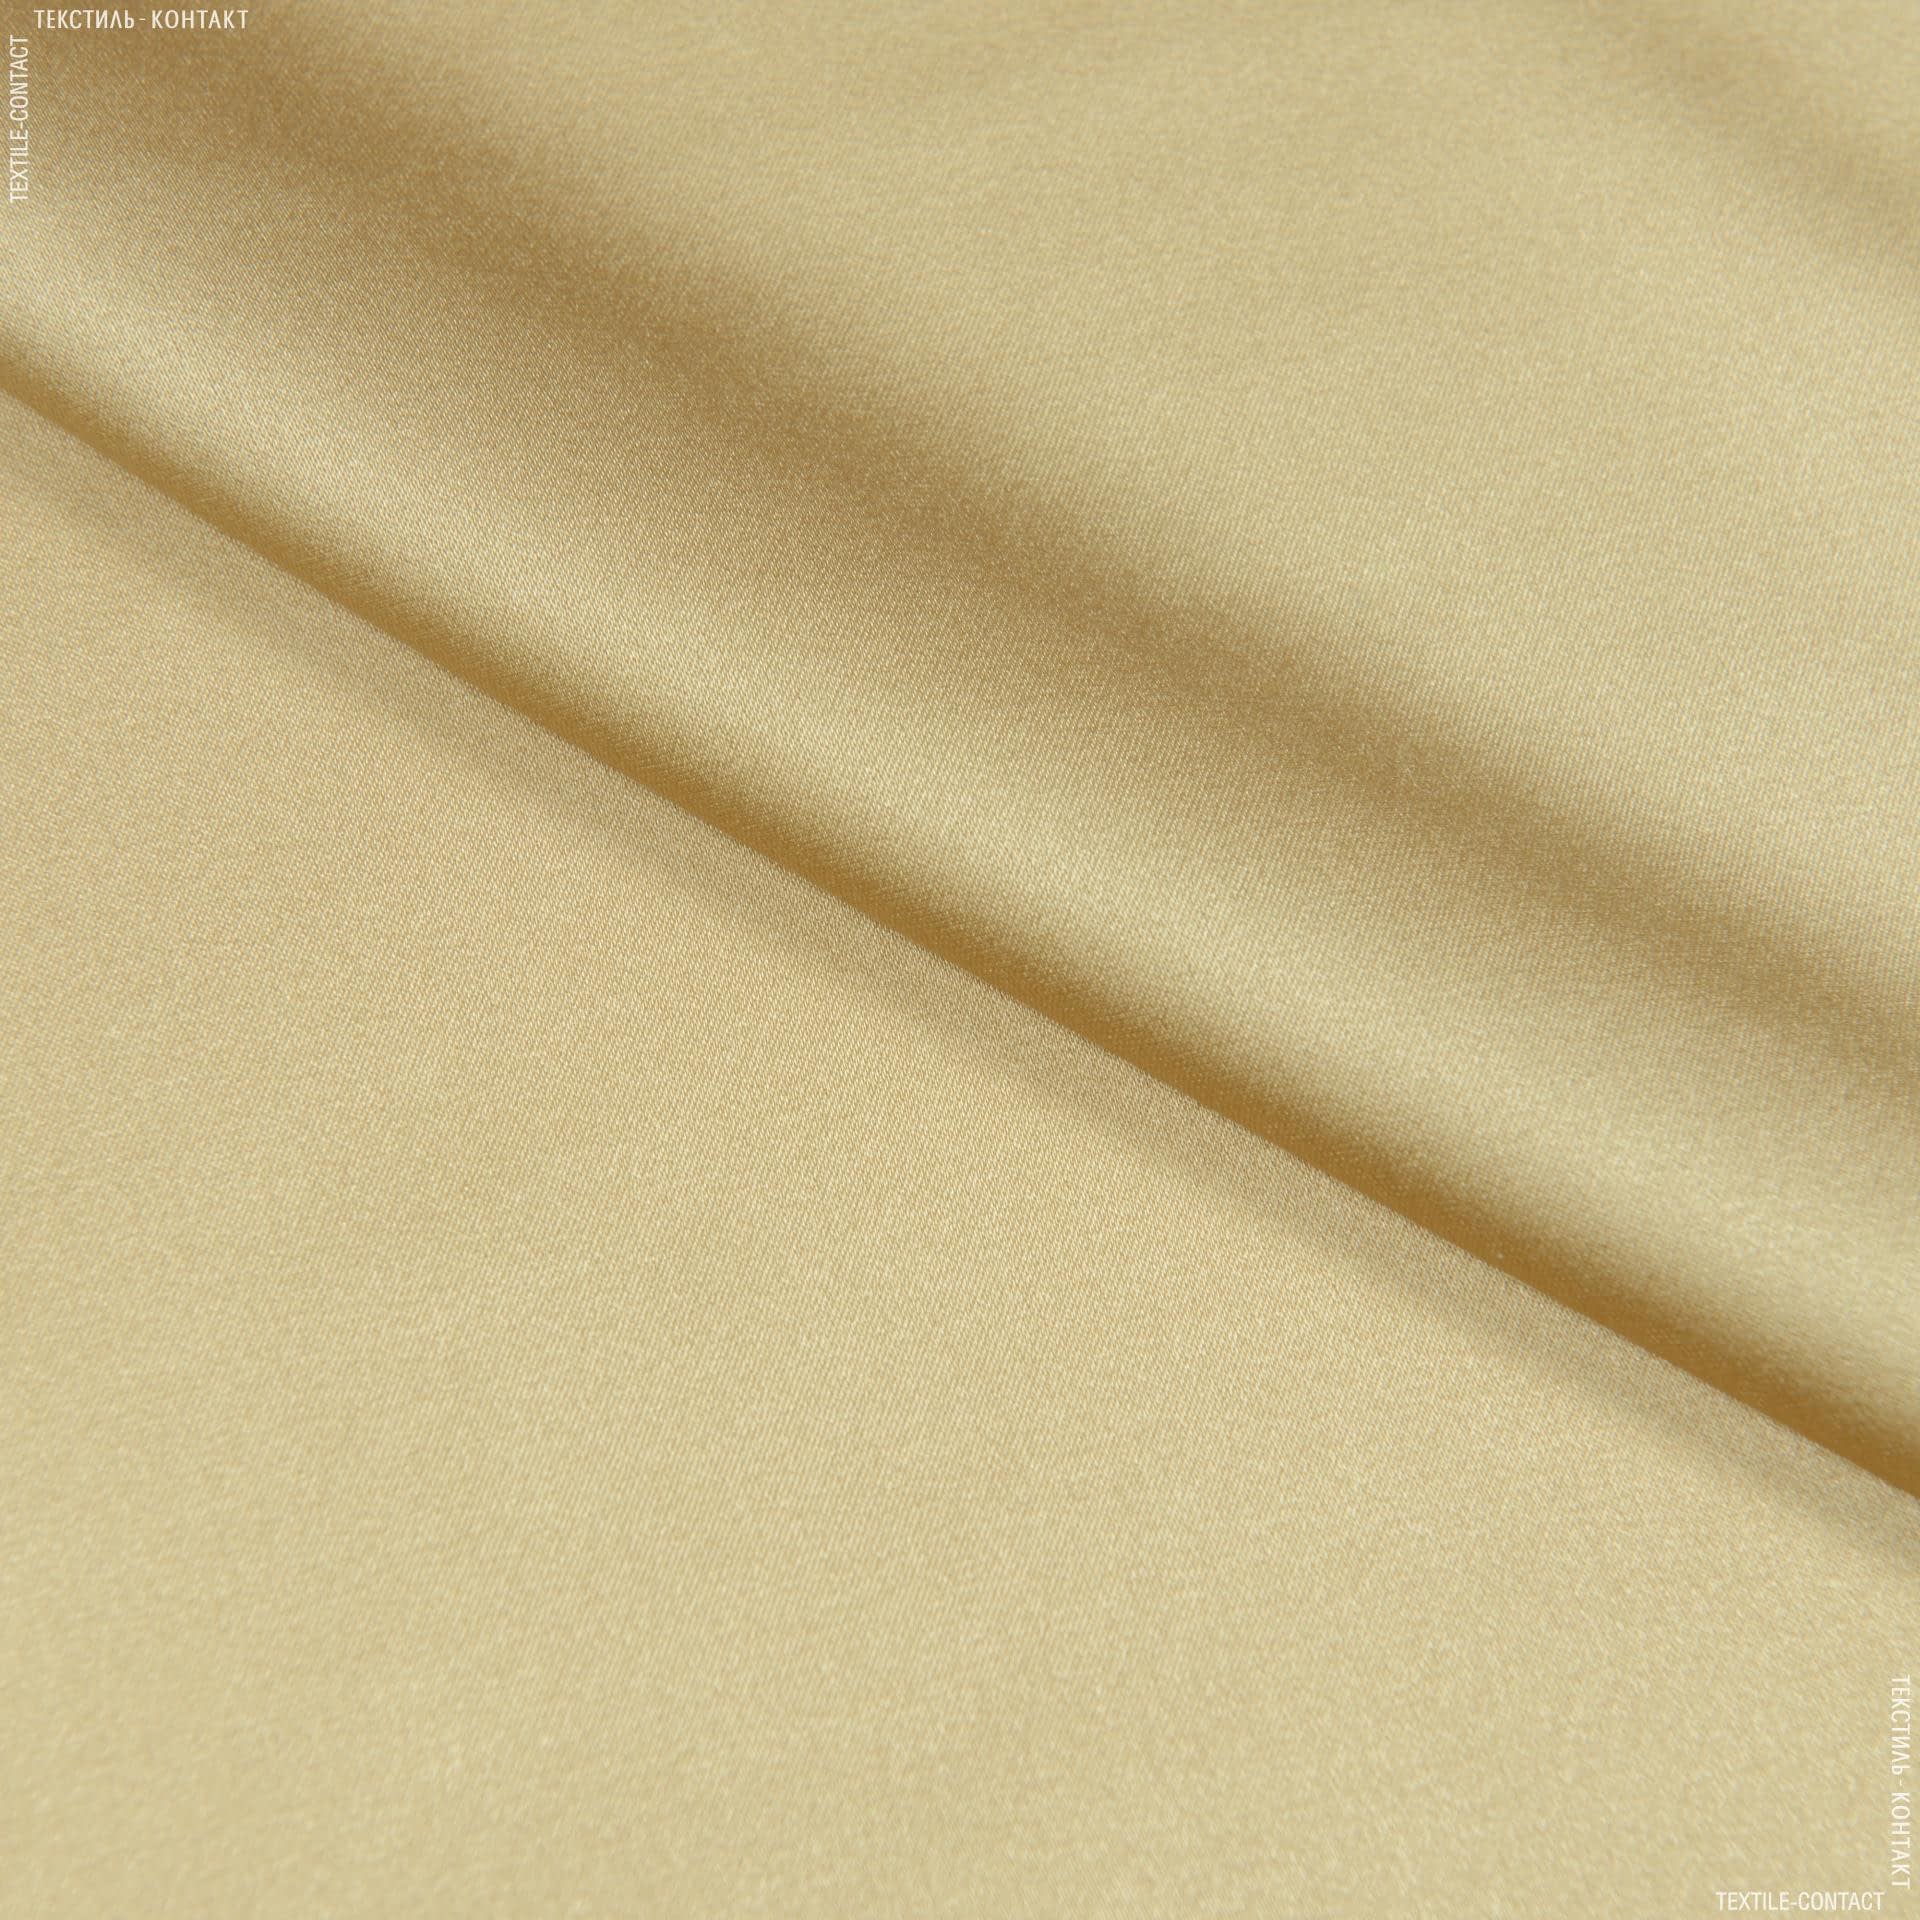 Тканини для білизни - Атлас шовк натуральний стрейч золото